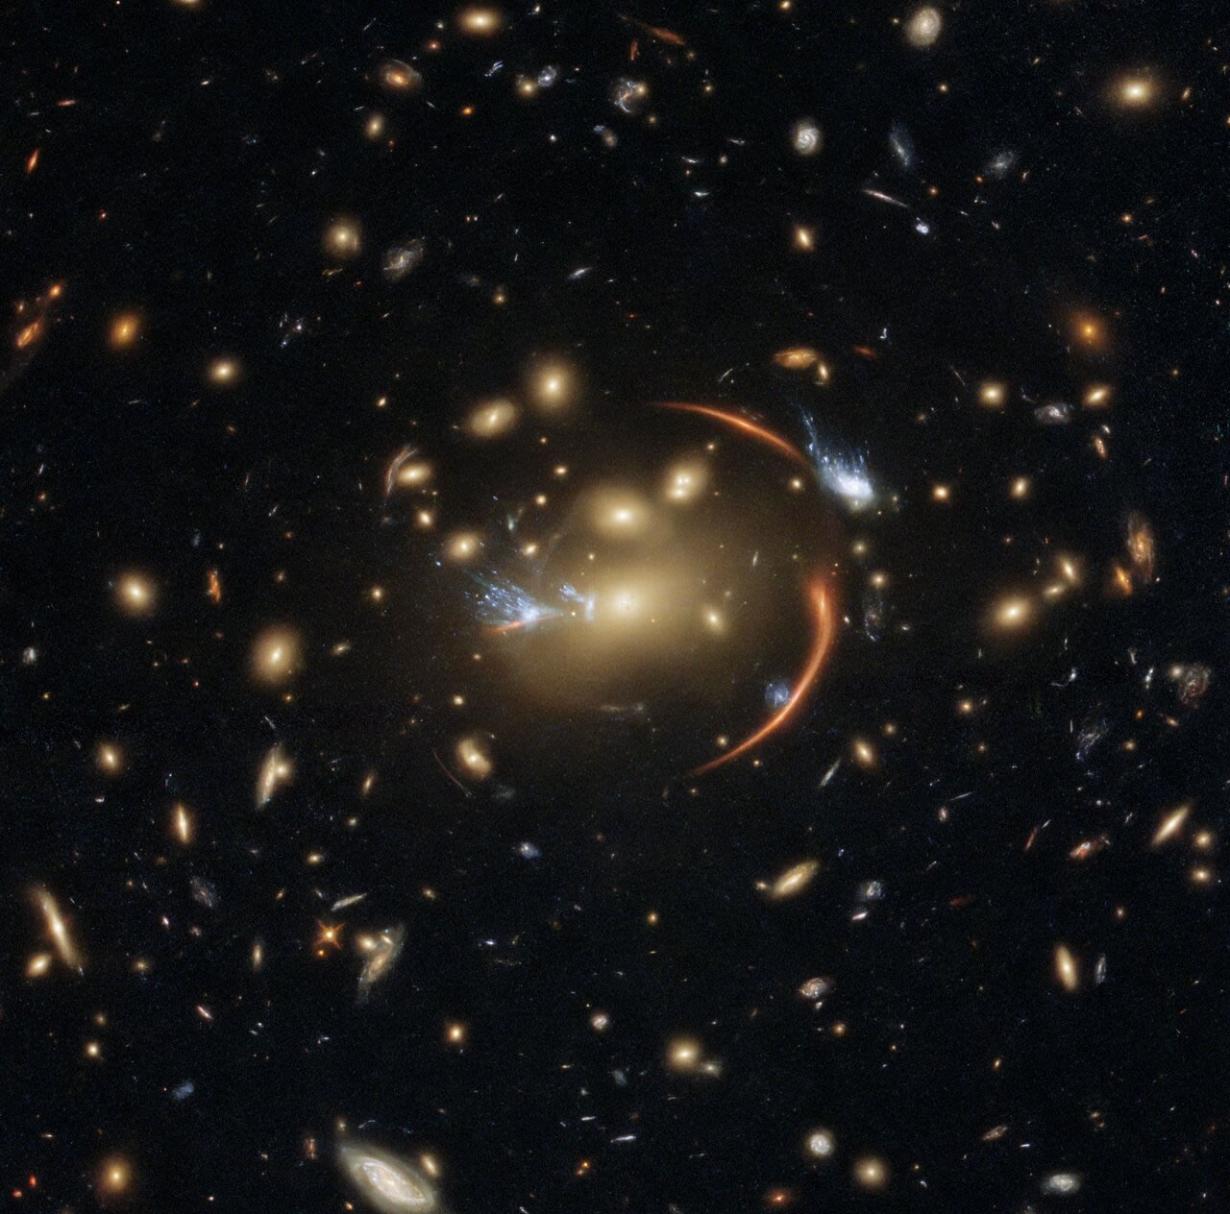 哈勃太空望远镜拍摄到新的强引力透镜照片